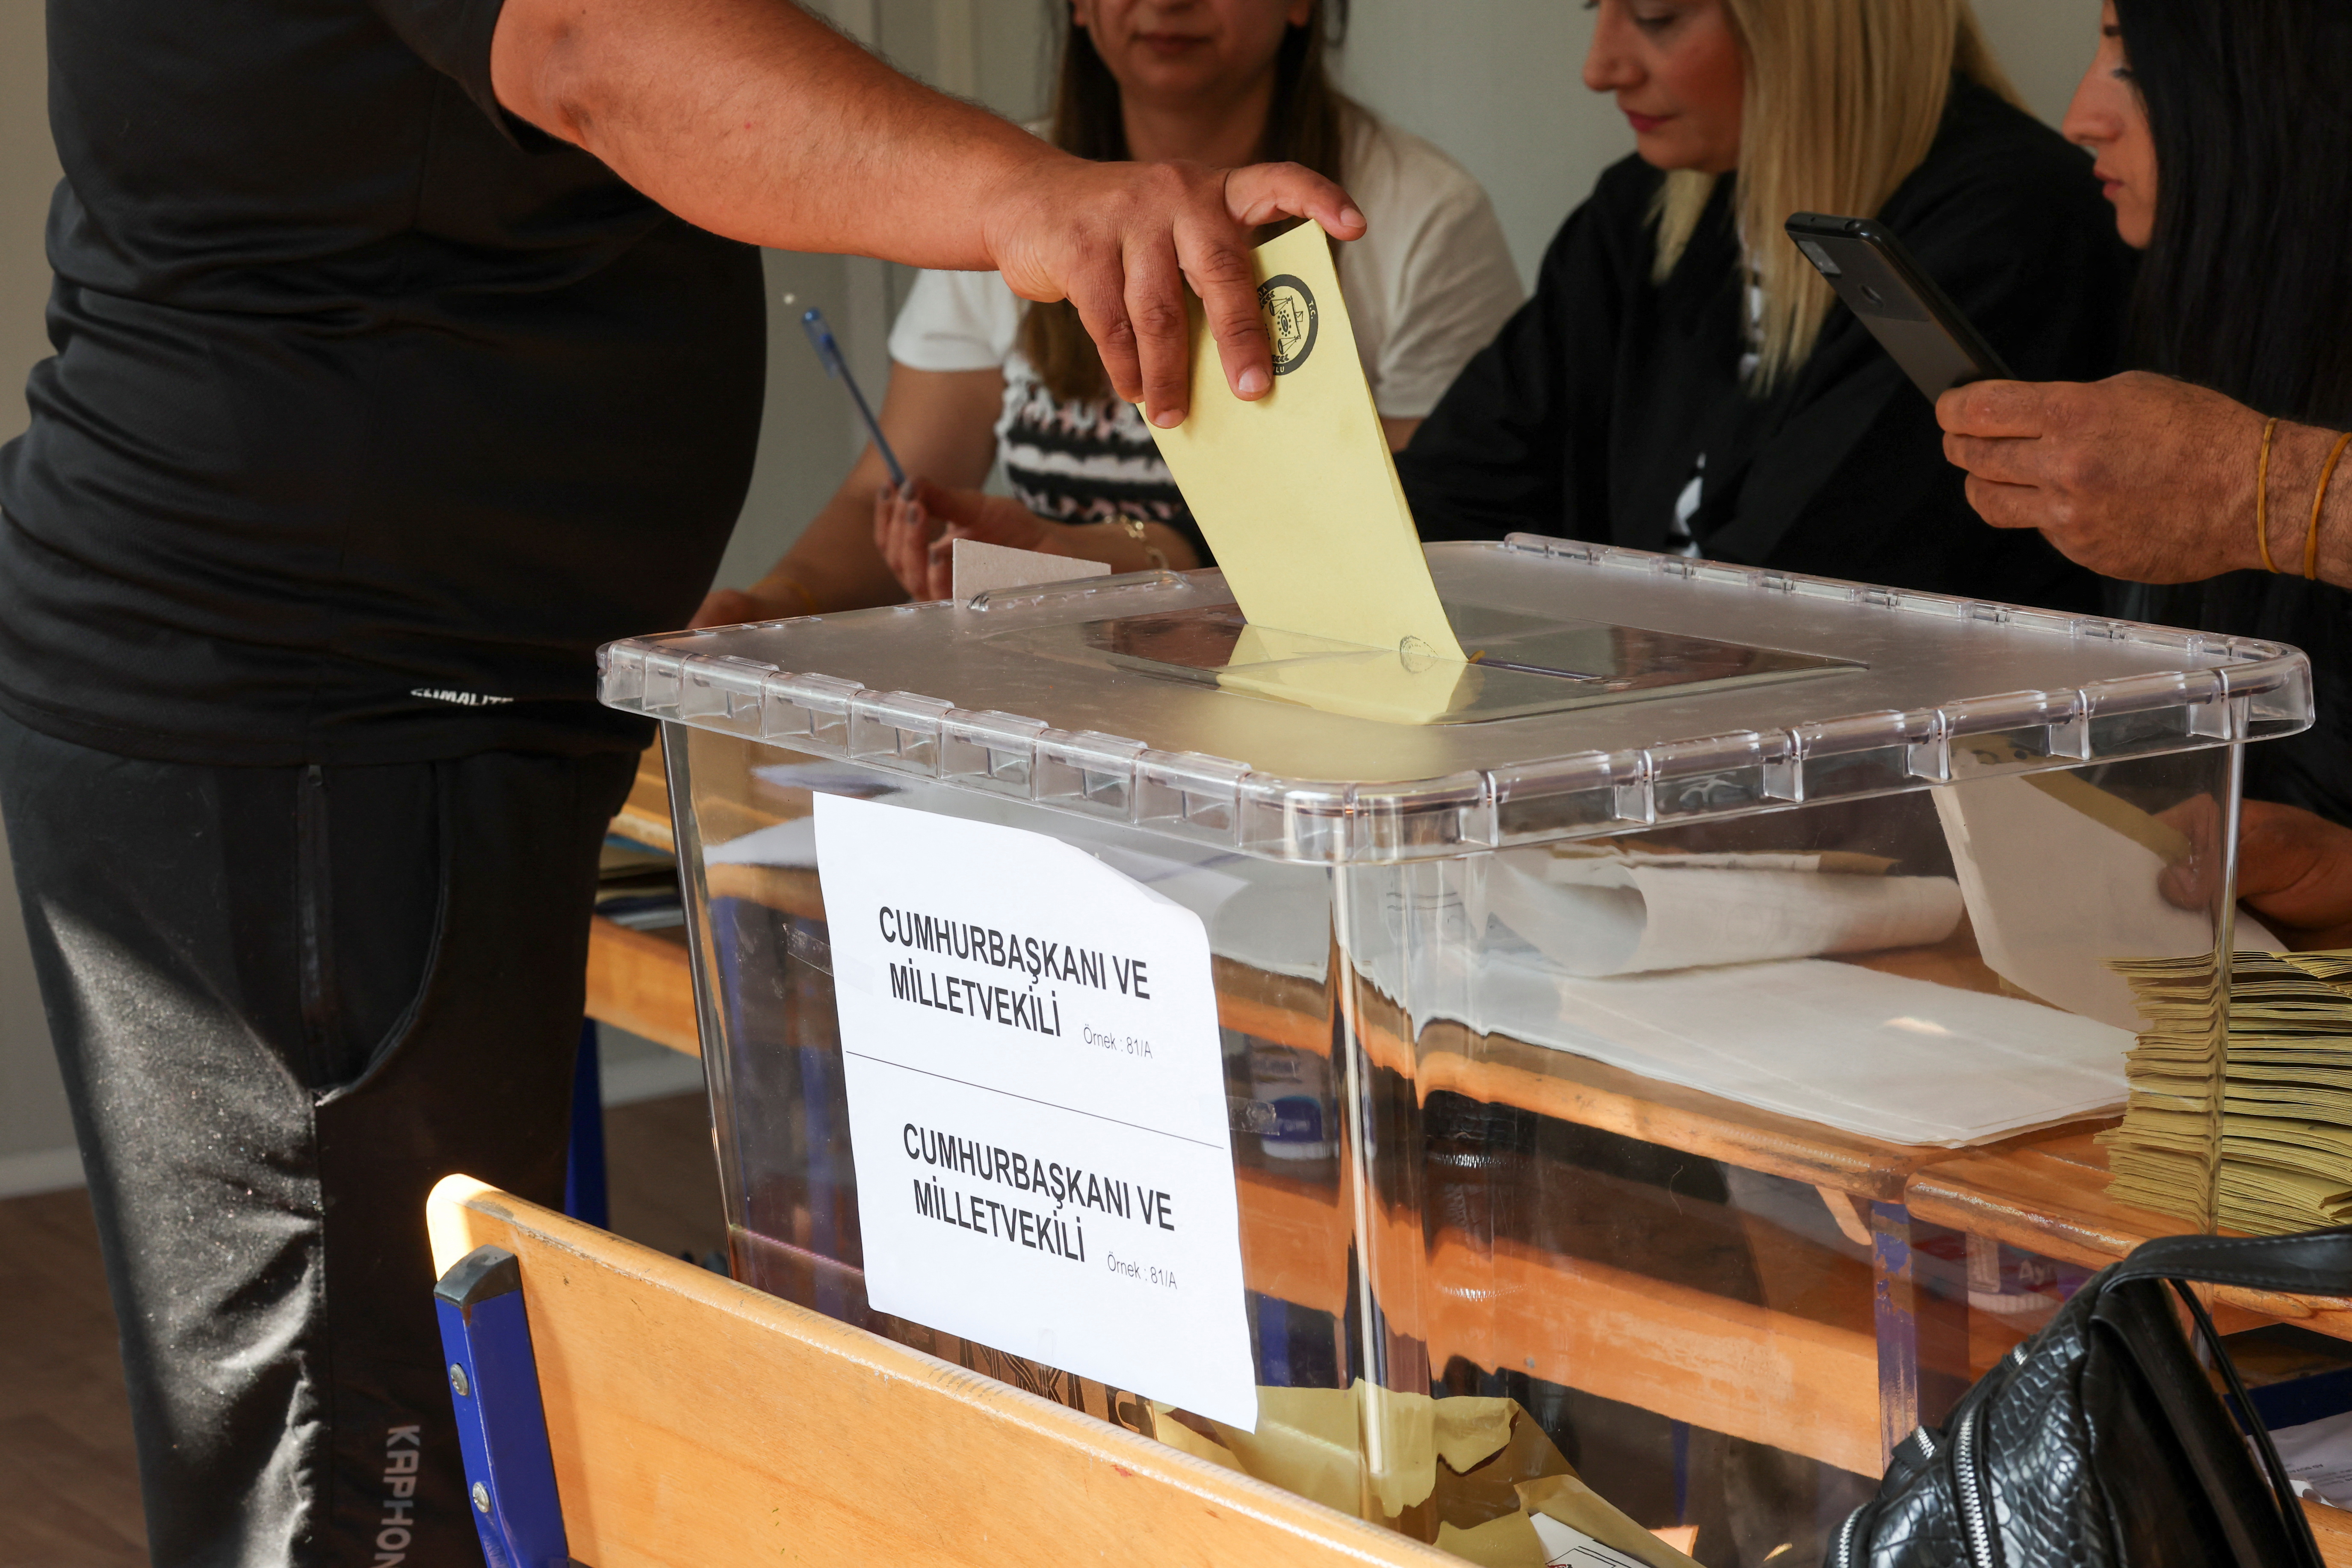 Η Τουρκία ψηφίζει σε κομβικές εκλογές που θα μπορούσαν να τερματίσουν την 20ετή διακυβέρνηση του Ερντογάν